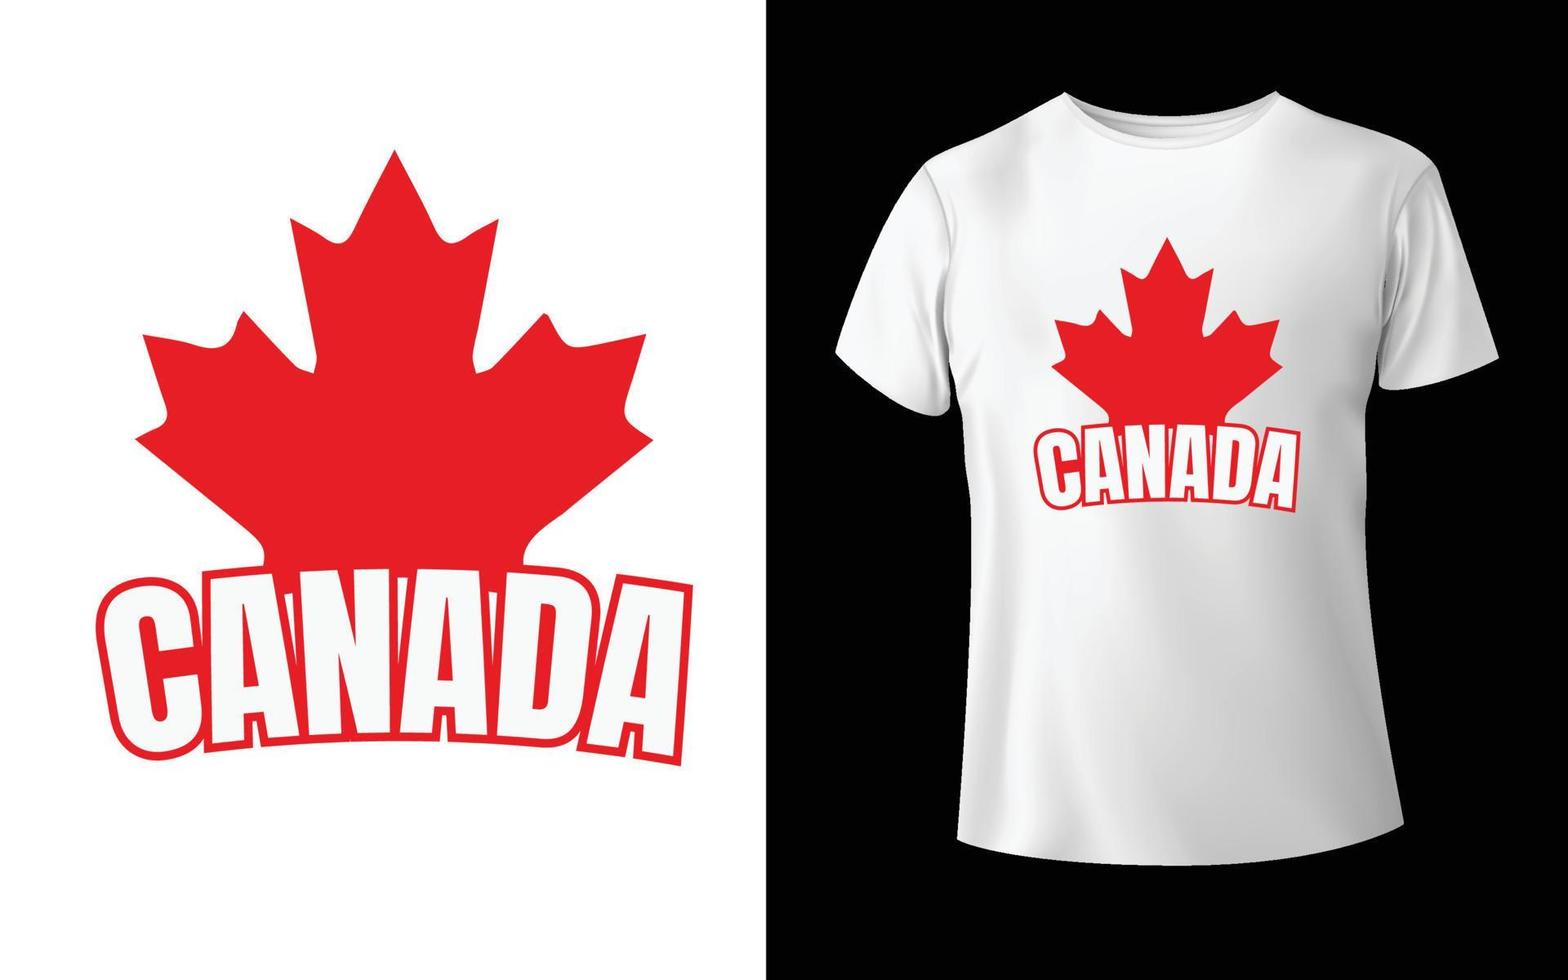 conception de t-shirt joyeuse fête du canada t-shirt de vecteur de la fête du canada conception de feuille du canada conception de t-shirt canada